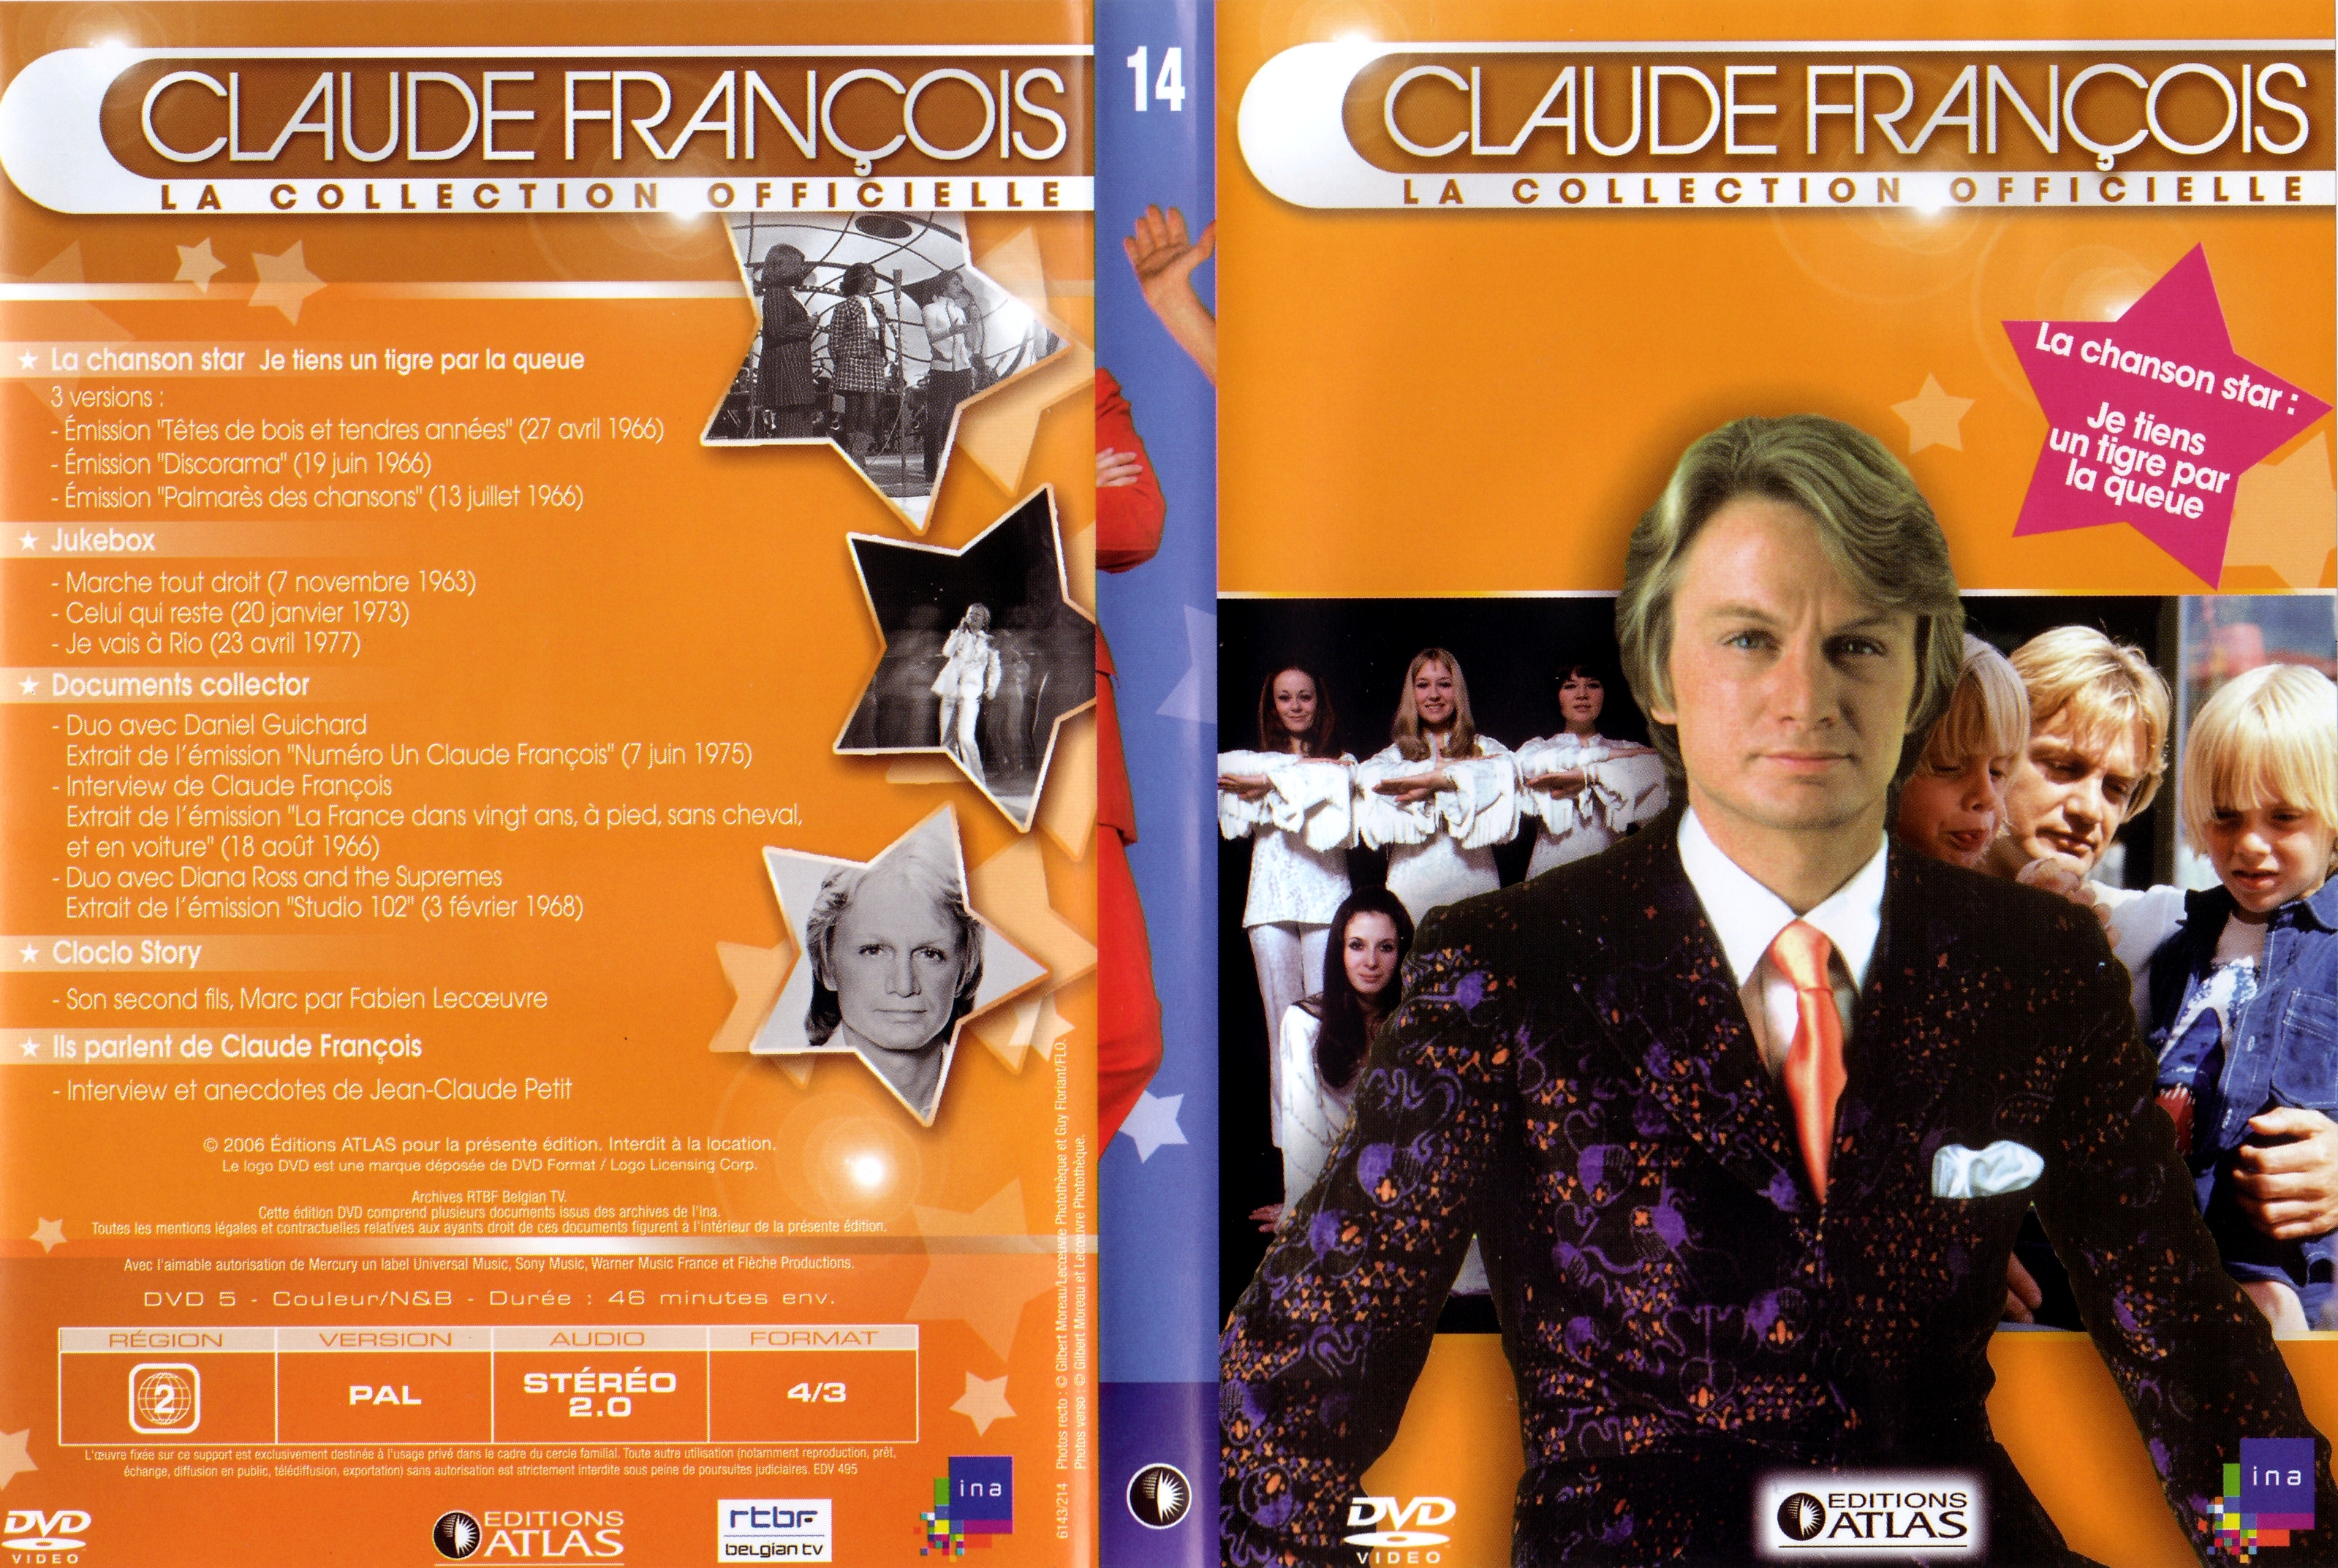 Jaquette DVD Claude Francois la collection officielle vol 14